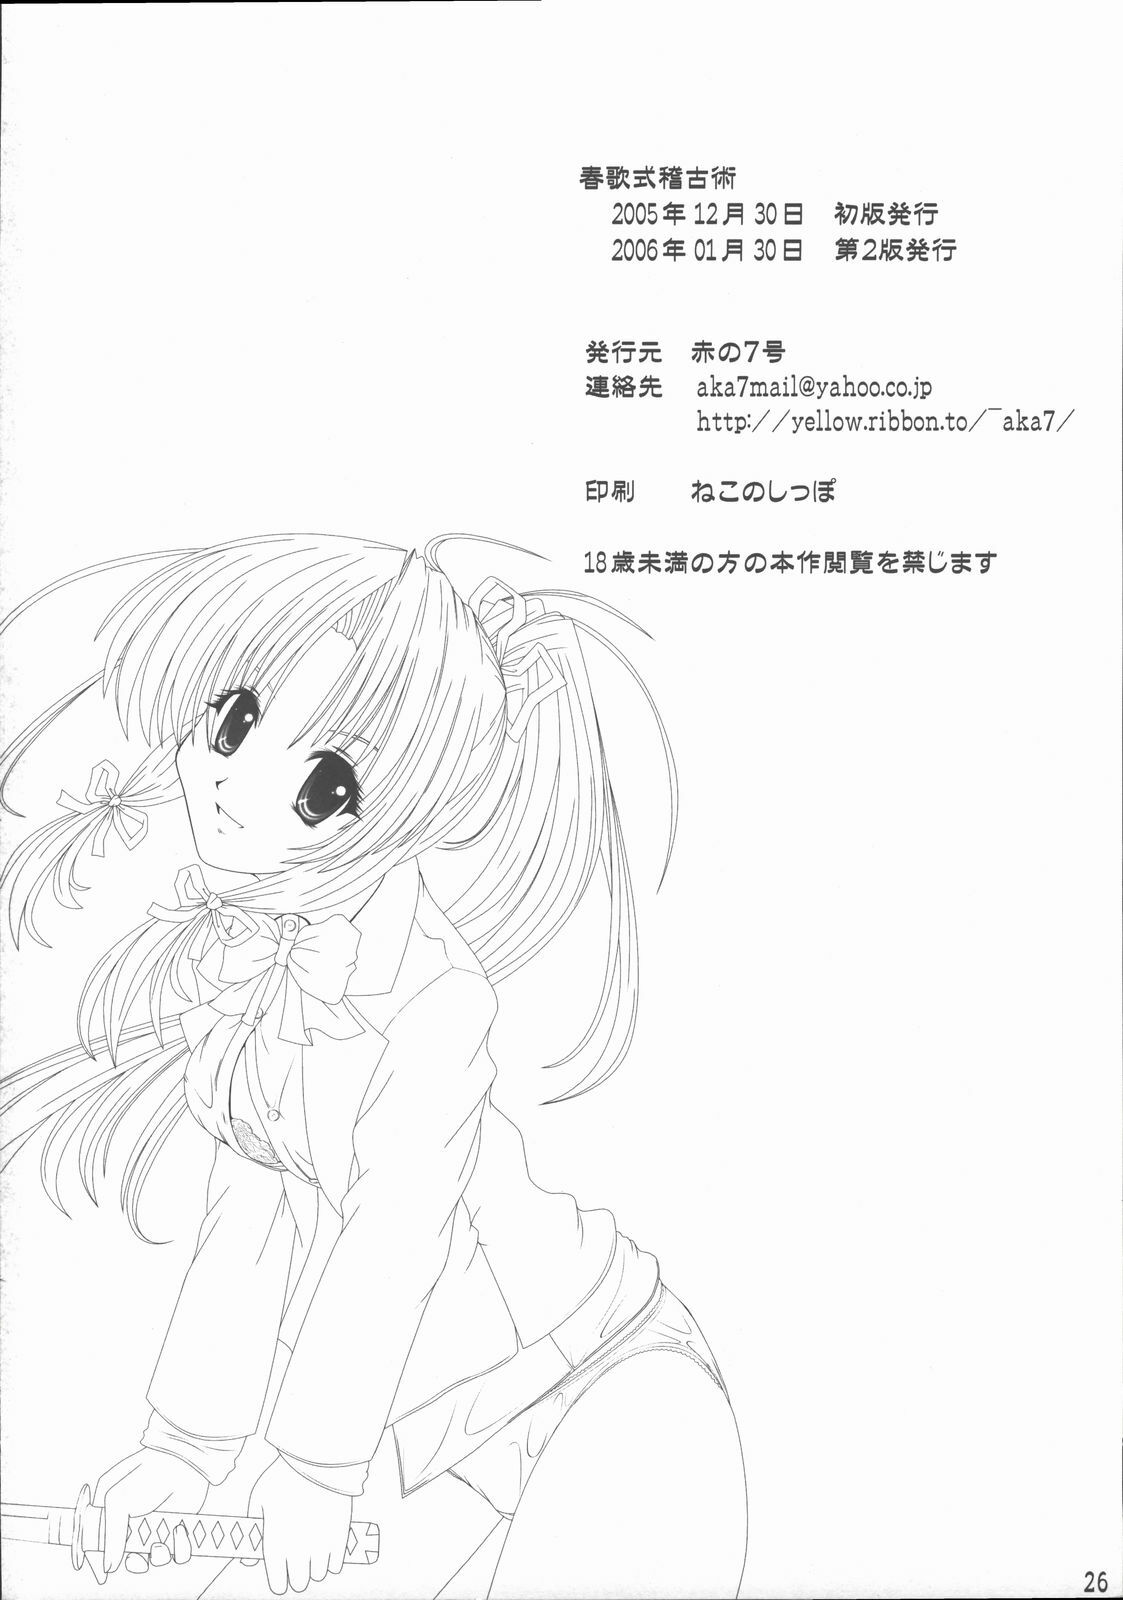 [Akano 7 Gou (MAS-R)] Haruka-shiki Keiko-jutsu (Sister Princess) [2006-01-30] page 25 full